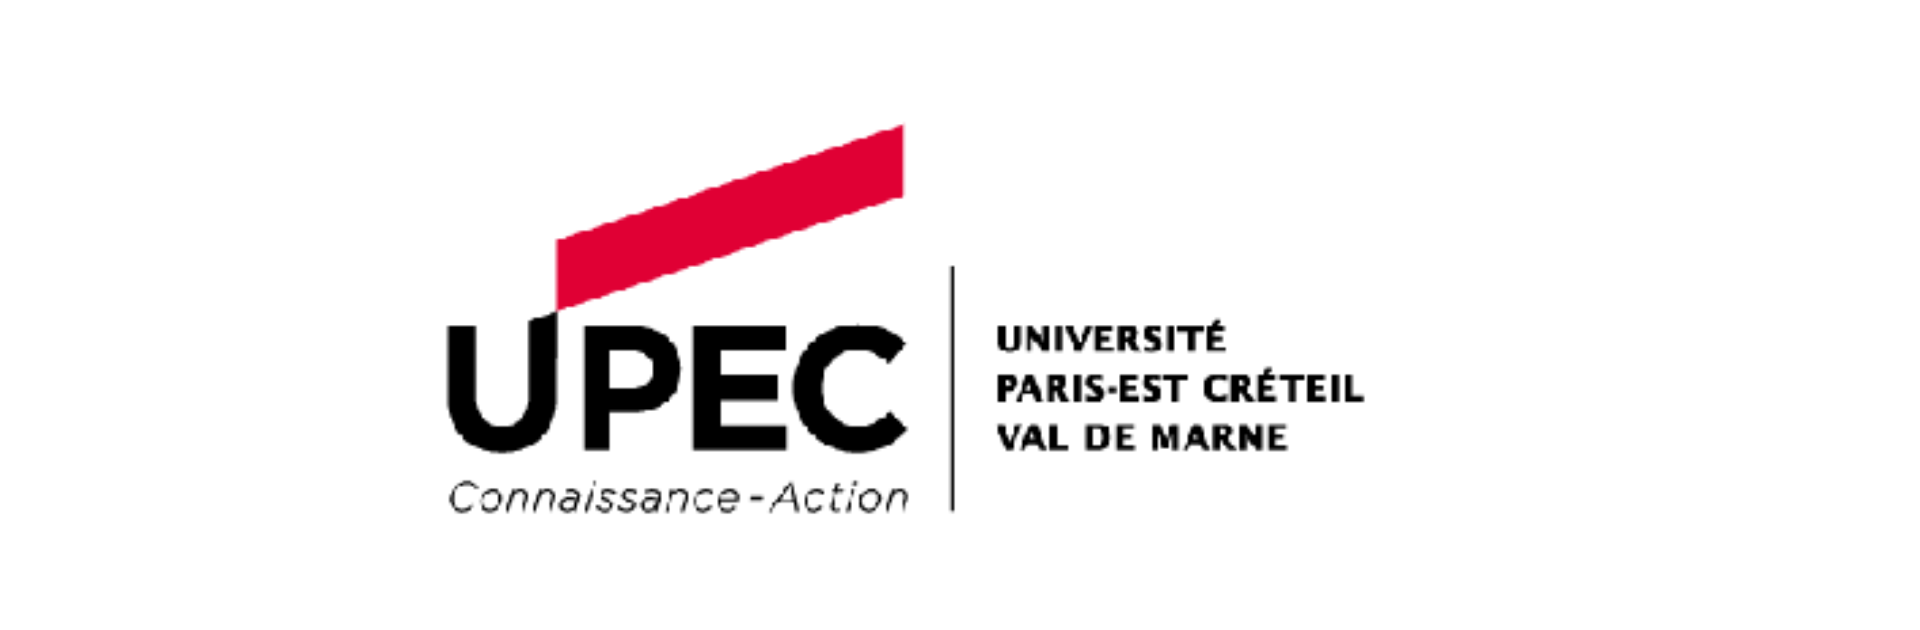 Paris Est Créteil University